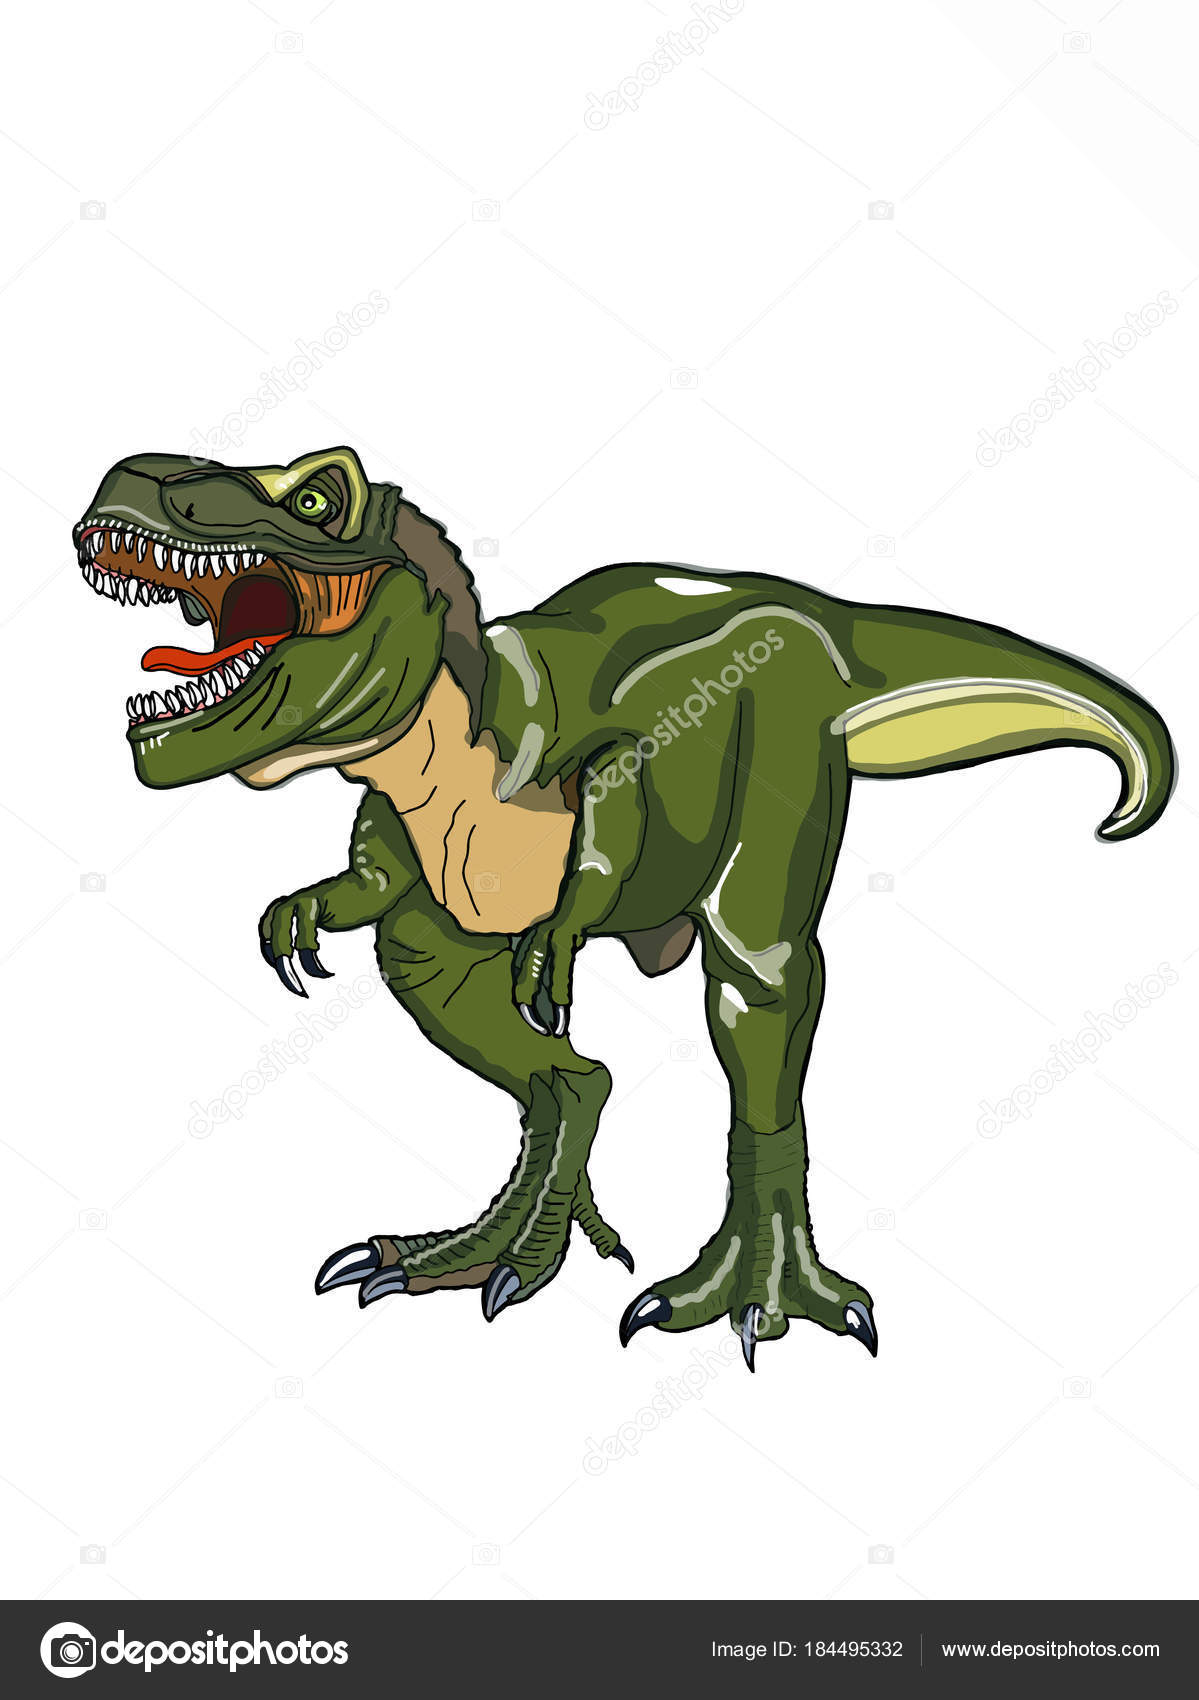 綺麗なリアル 恐竜 イラスト フリー 最高の動物画像